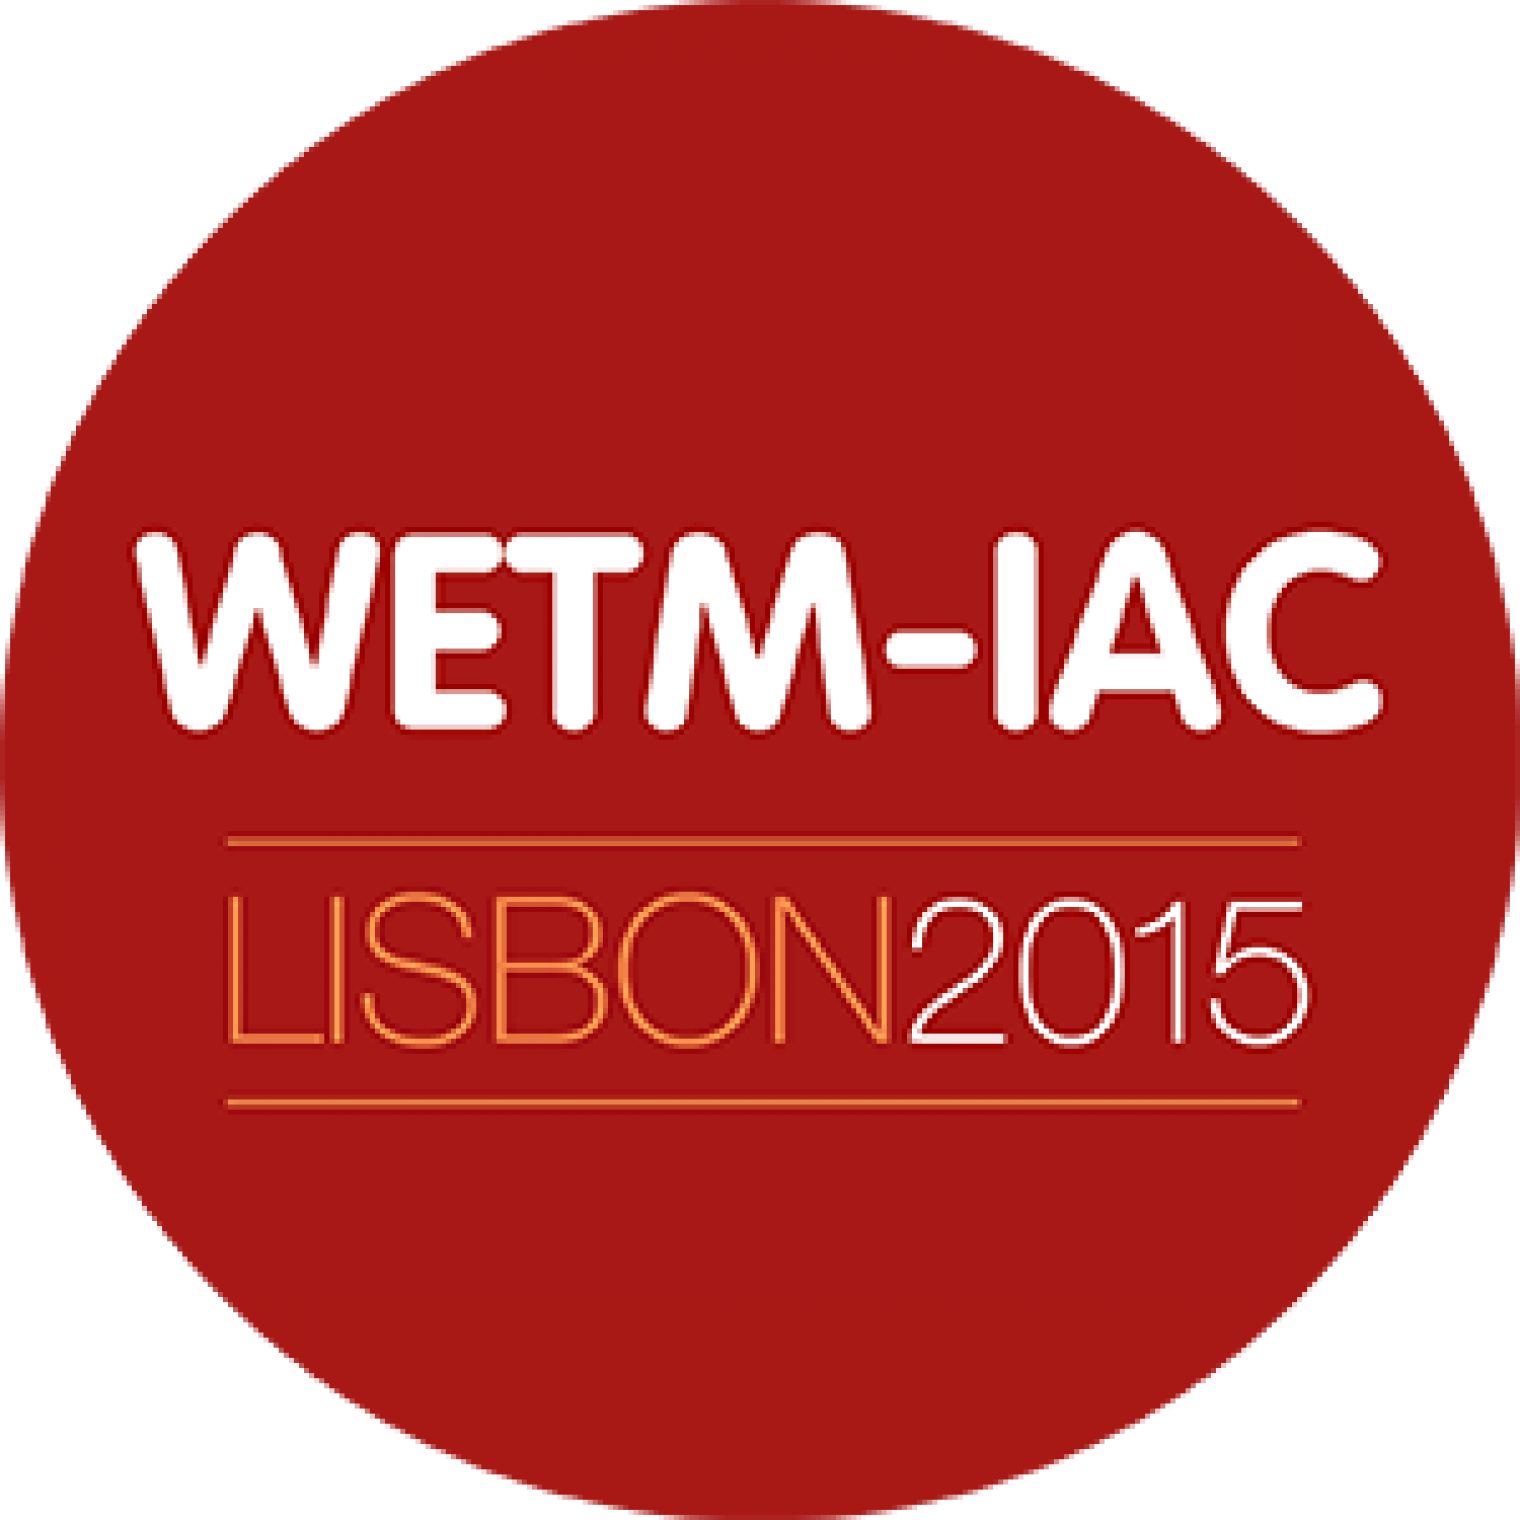 Registration is open for WETM-IAC 2015!